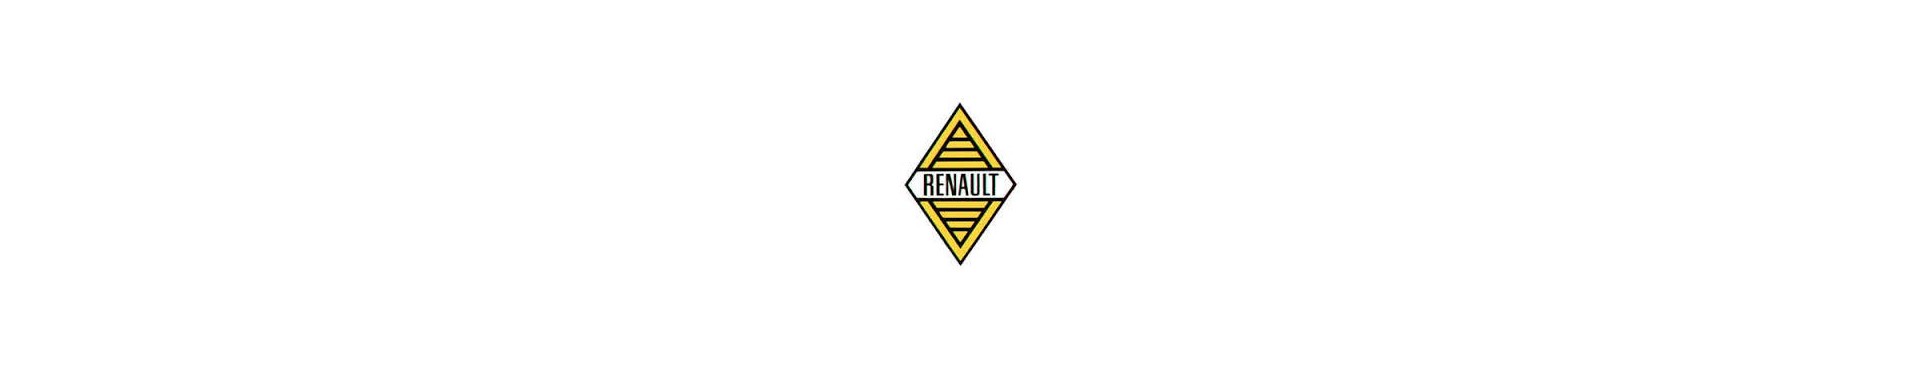 Pour Renault